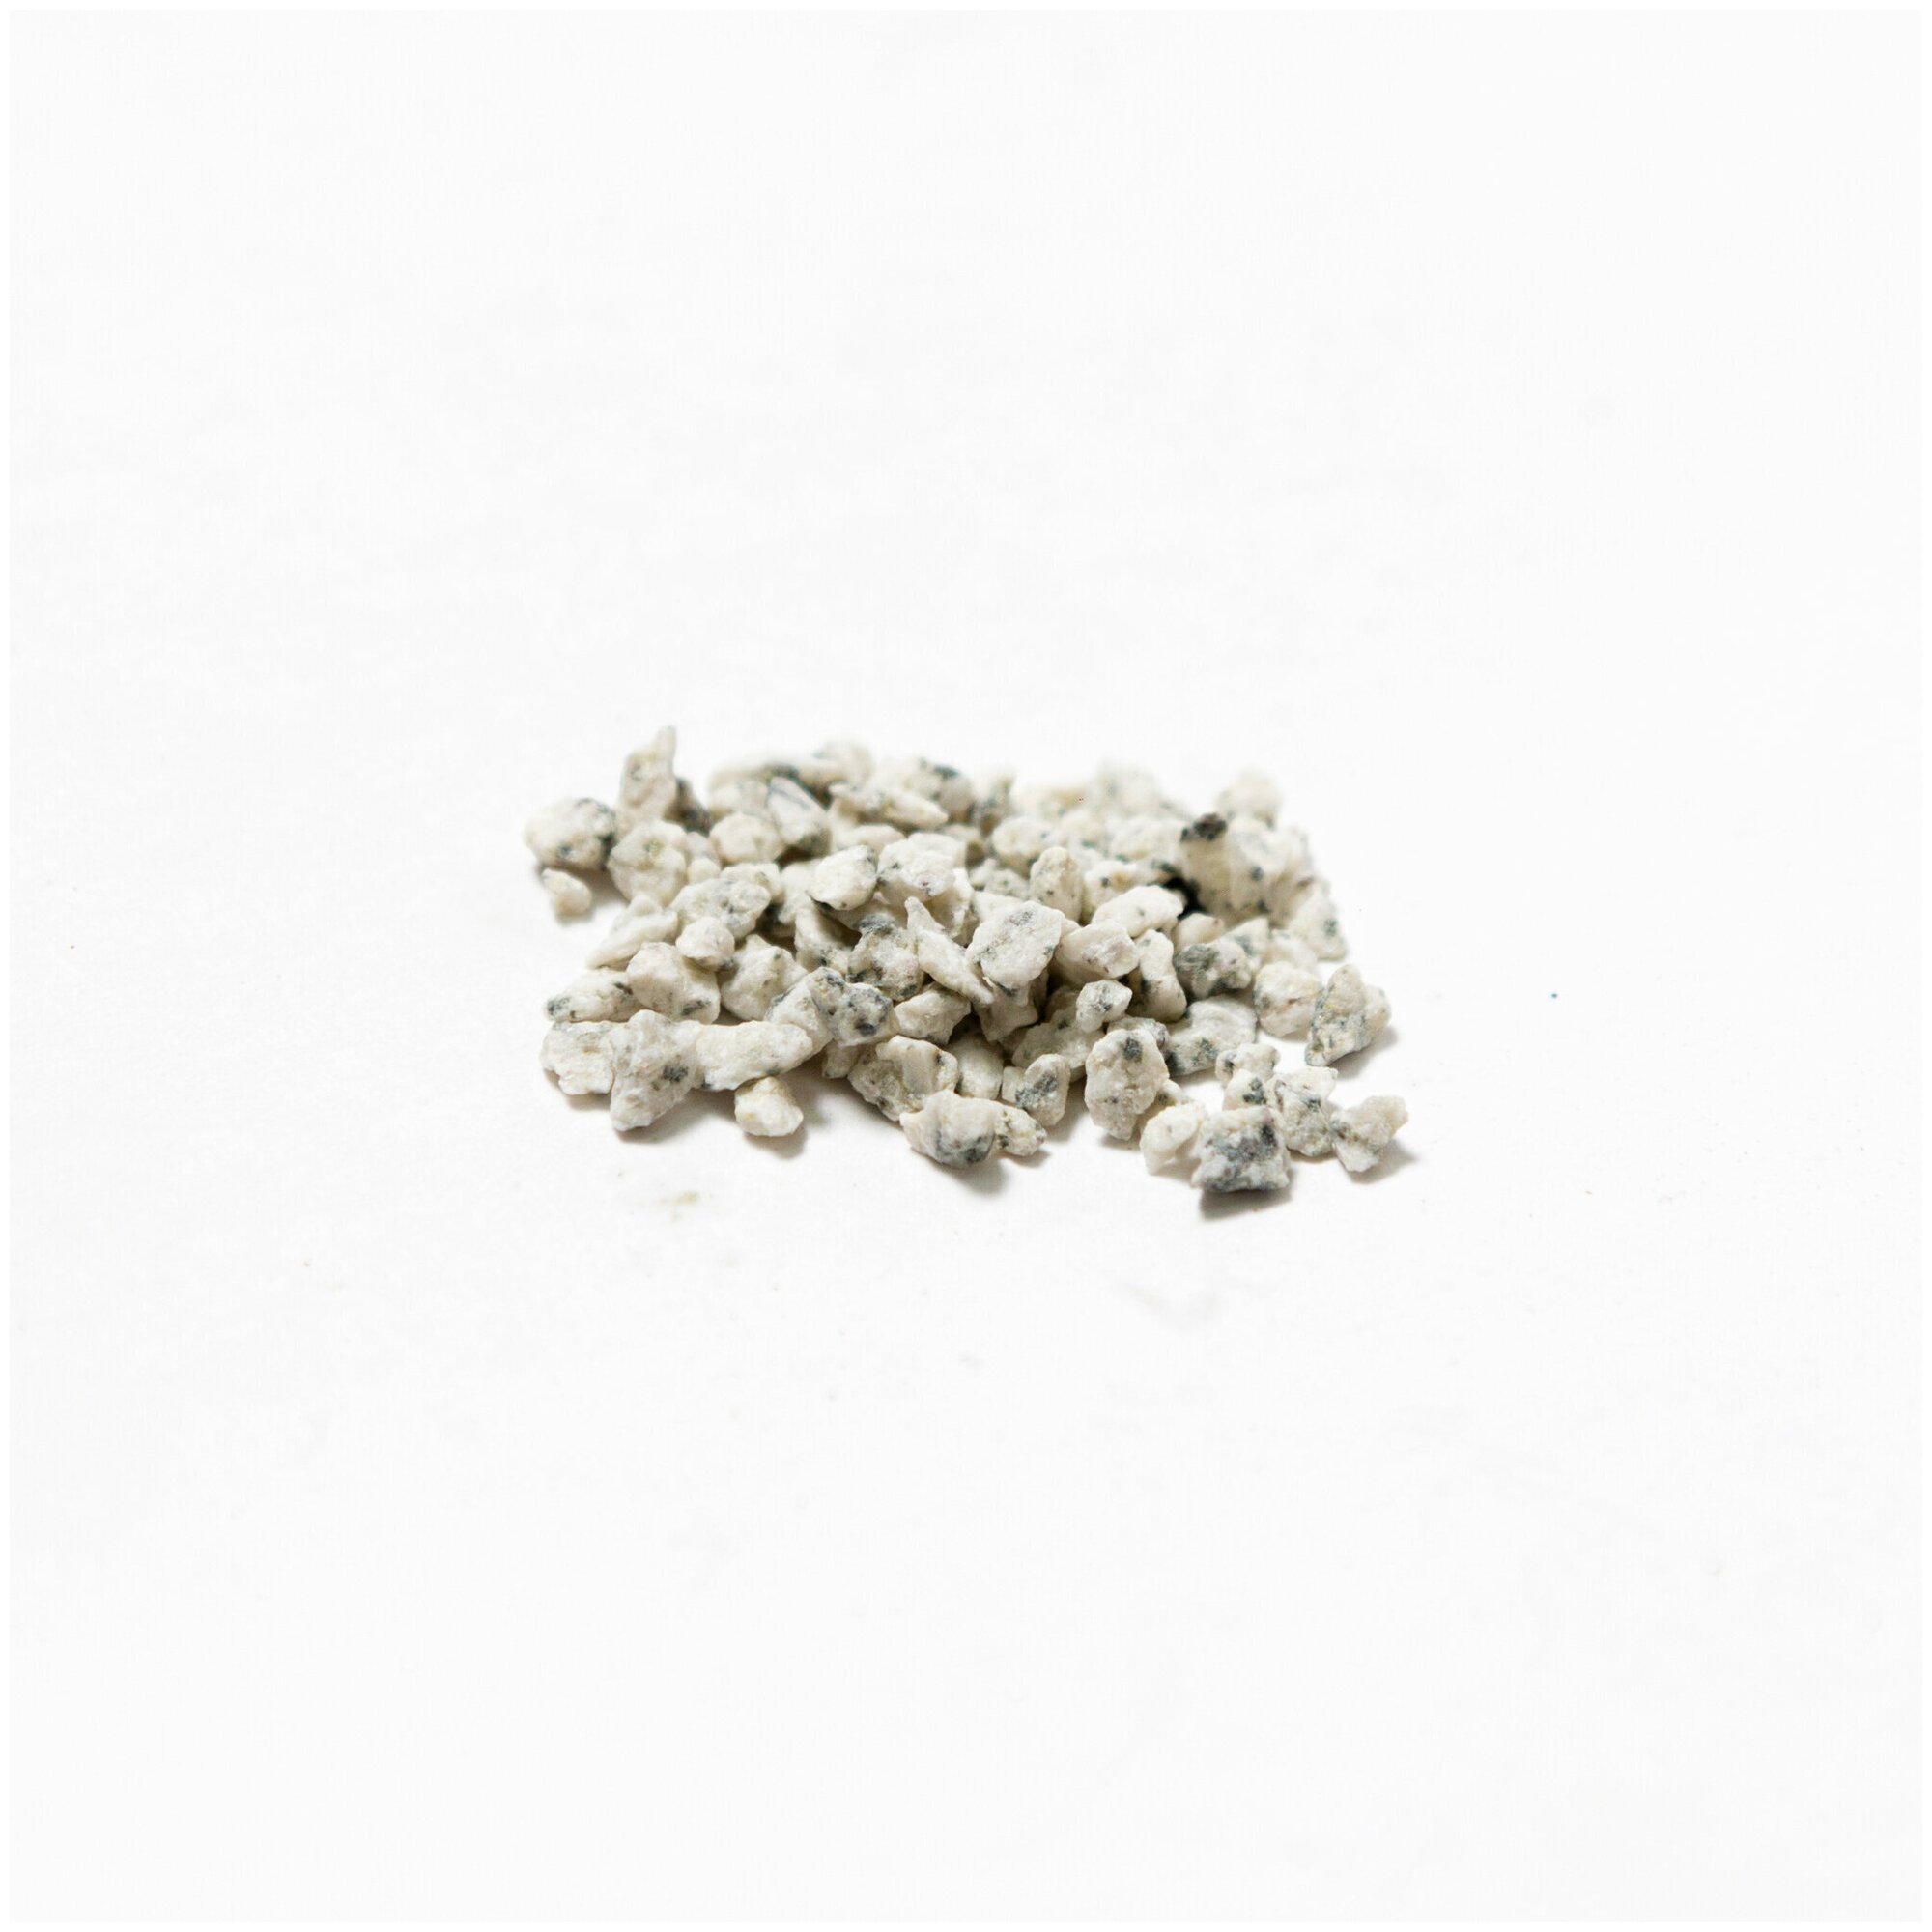 Крошка гранитная бело-серая фракция 2-5 мм, окатанная 3 кг (233). Декоративный грунт